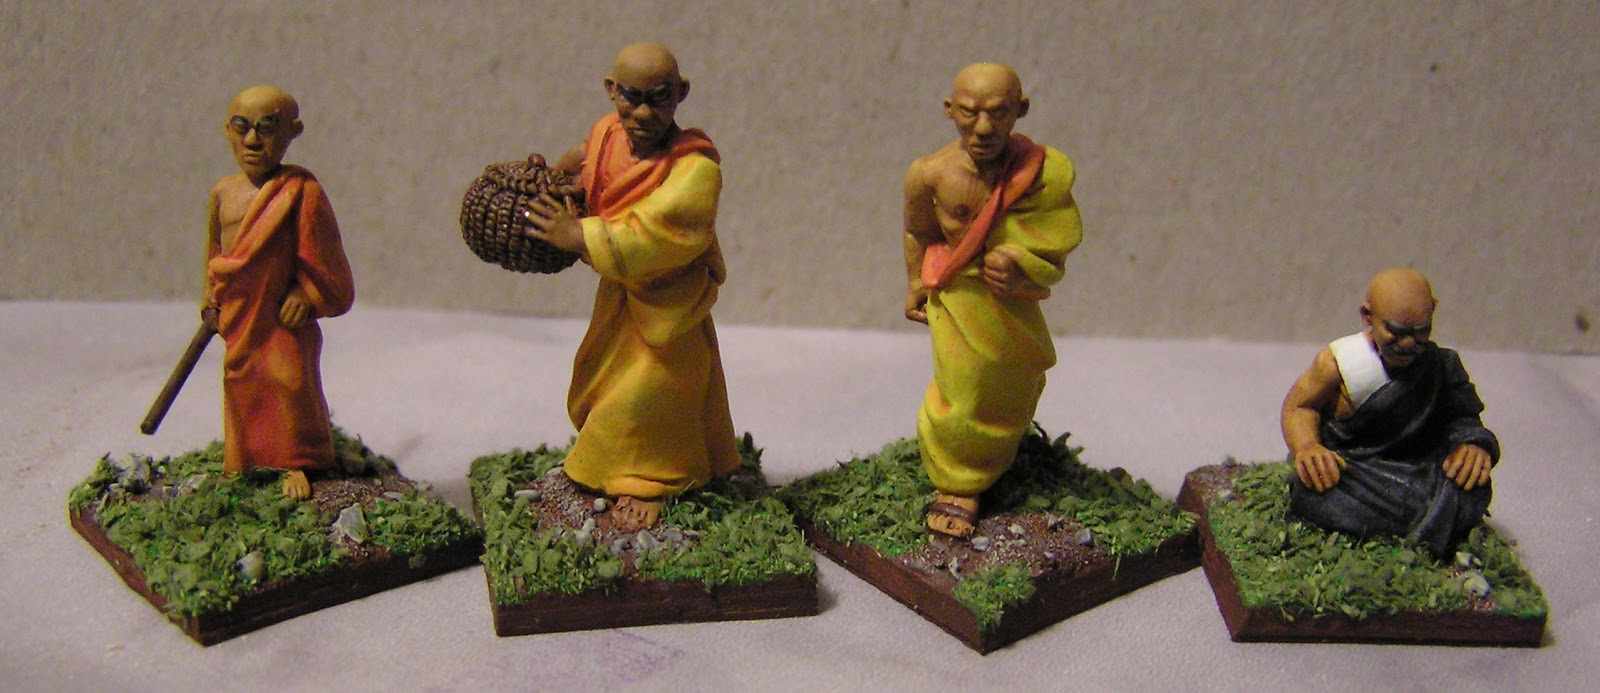 Nouveaux moines bouddhistes.  P1010252